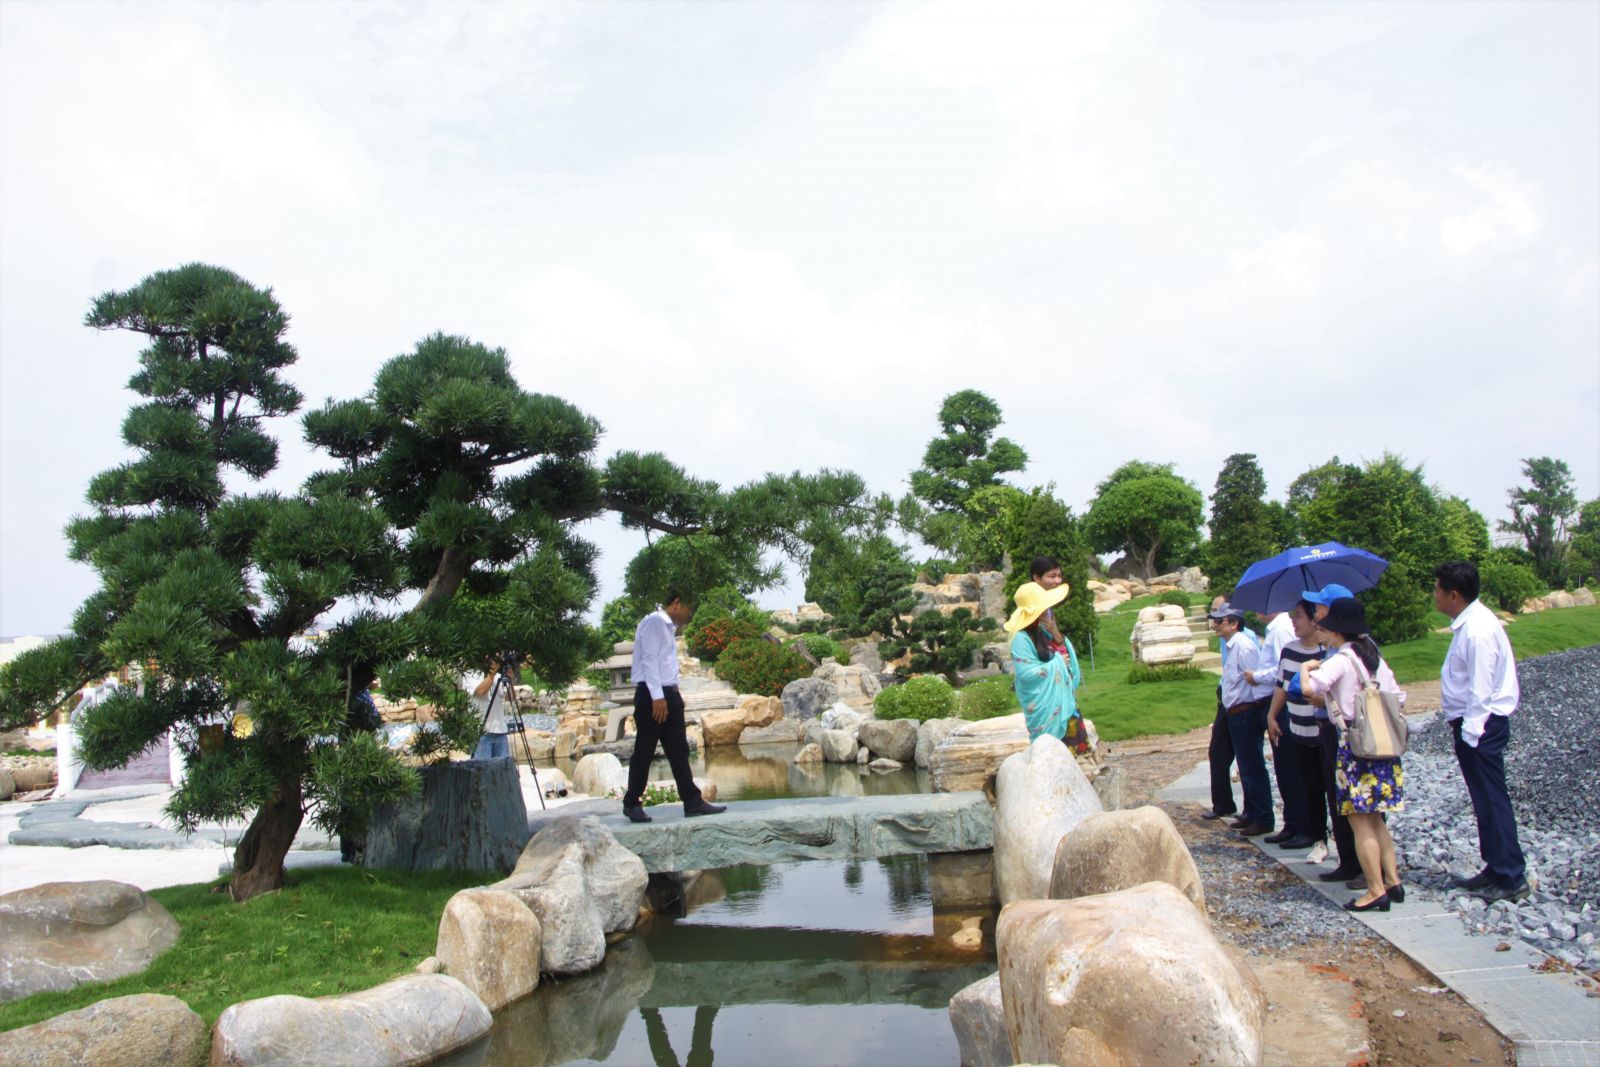 Vườn thú Mỹ Quỳnh (xã Tân Mỹ, huyện Đức Hòa) có diện tích khoảng 20ha vườn thú và 30ha khu vực vui chơi, giải trí. Điểm đặc biệt của vườn thú là mô hình sở thú bán hoang dã. Động vật được thả tự do và tạo điều kiện sống tốt nhất. Dự án được đầu tư 80%. Dự kiến ra mắt vào tháng 9 tới